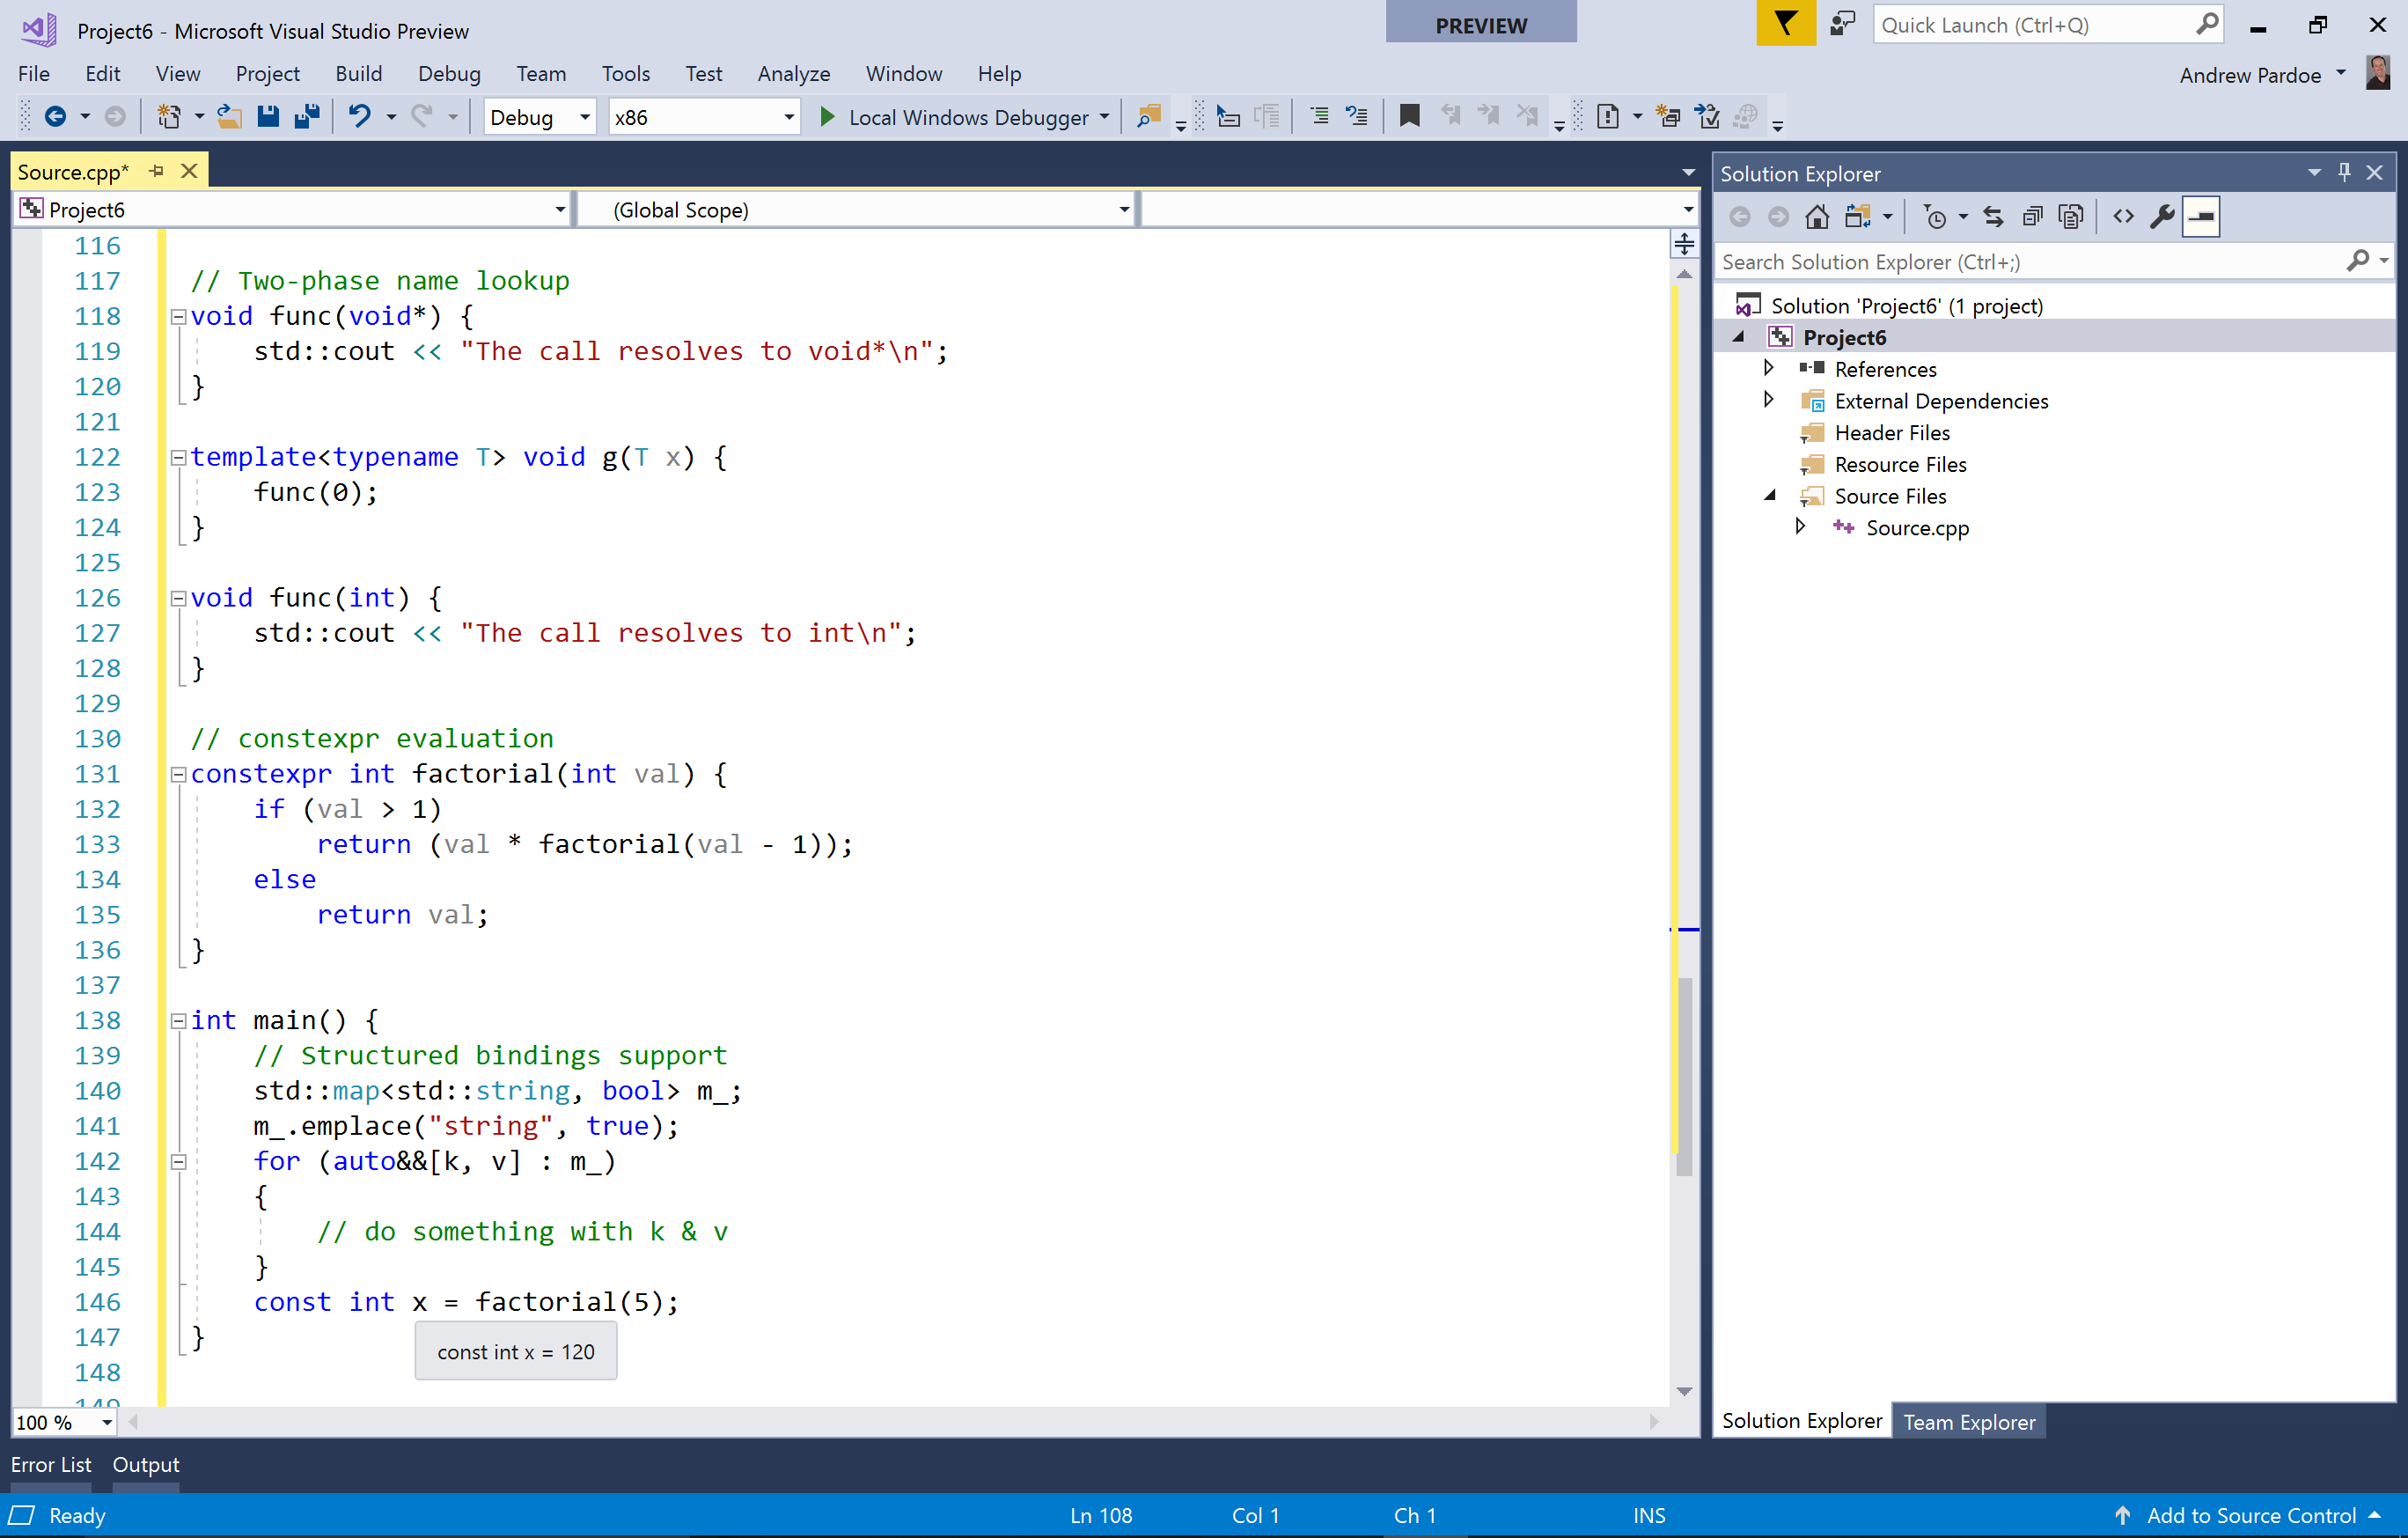 Снимок экрана поддержки для C++11, C++14 и многих компонентов C++17